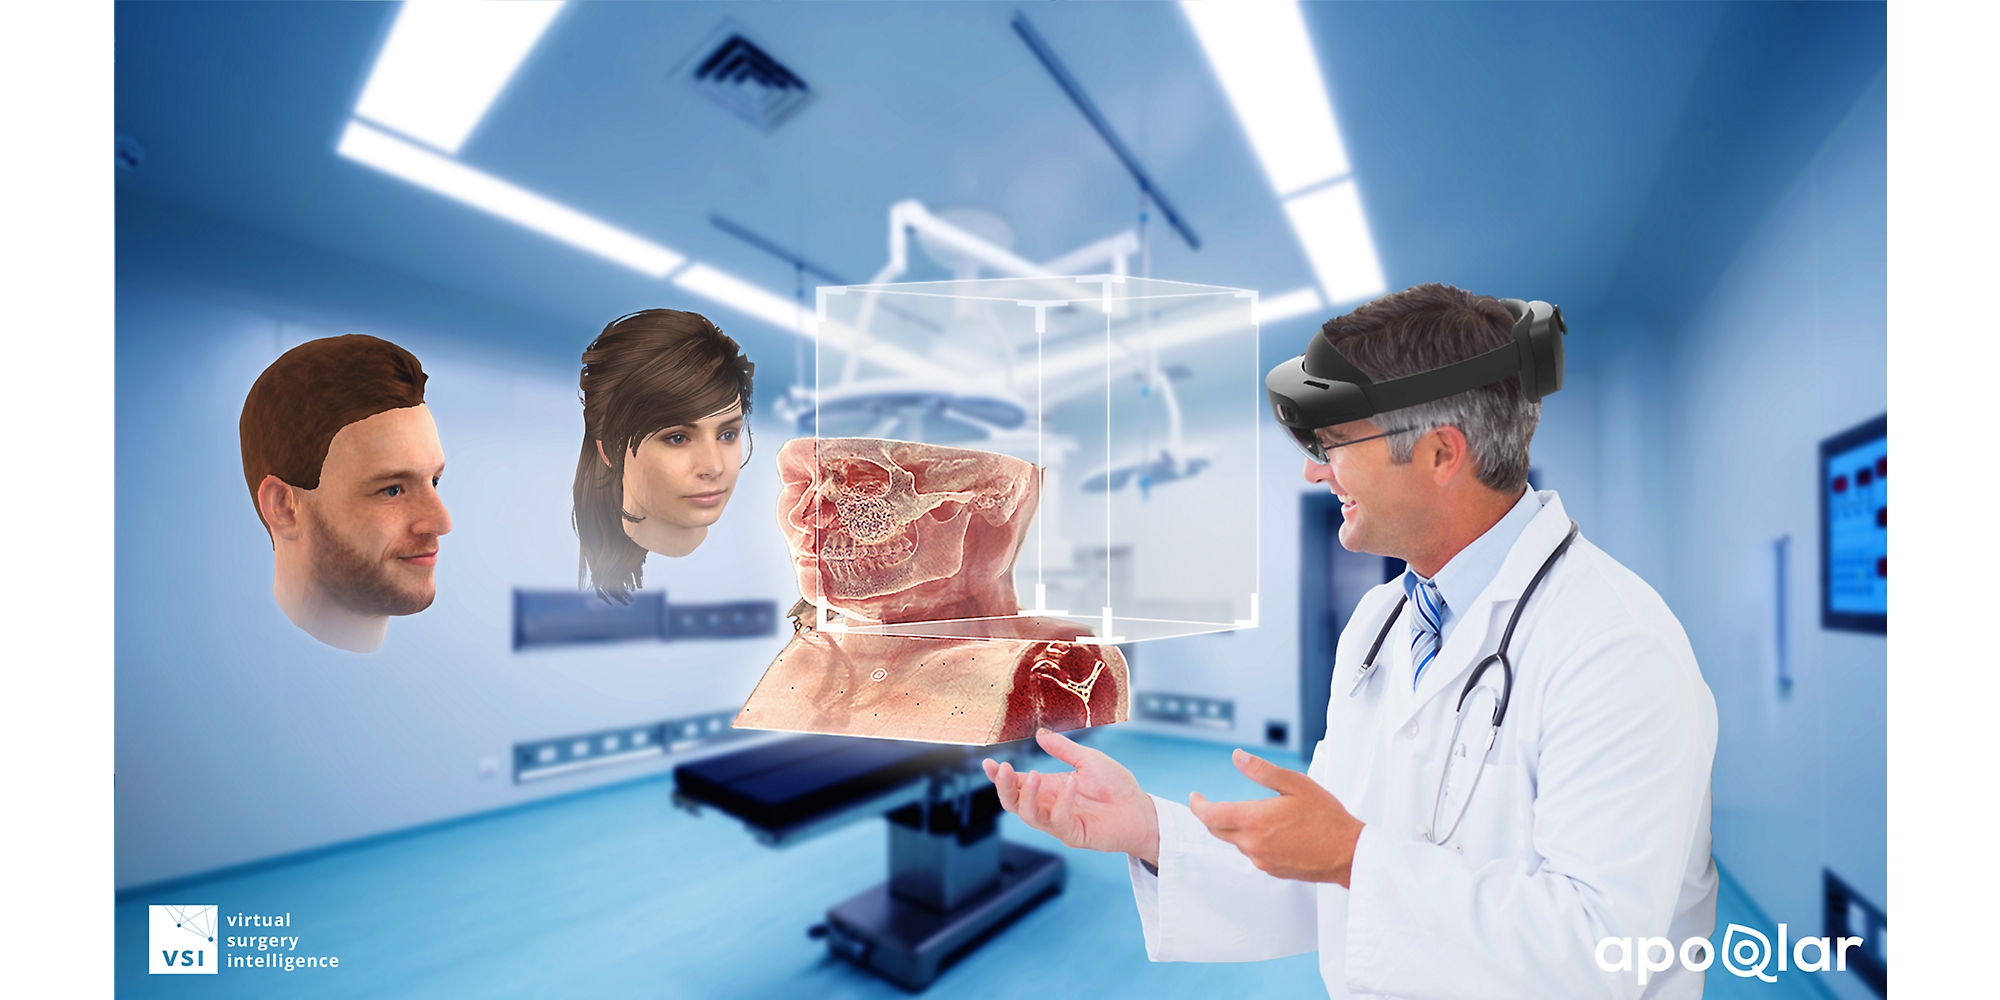 طبيب يستخدم جهاز HoloLens 2 لعرض مخطط طبي والتحدث مع شخصين آخرين في الواقع المختلط.